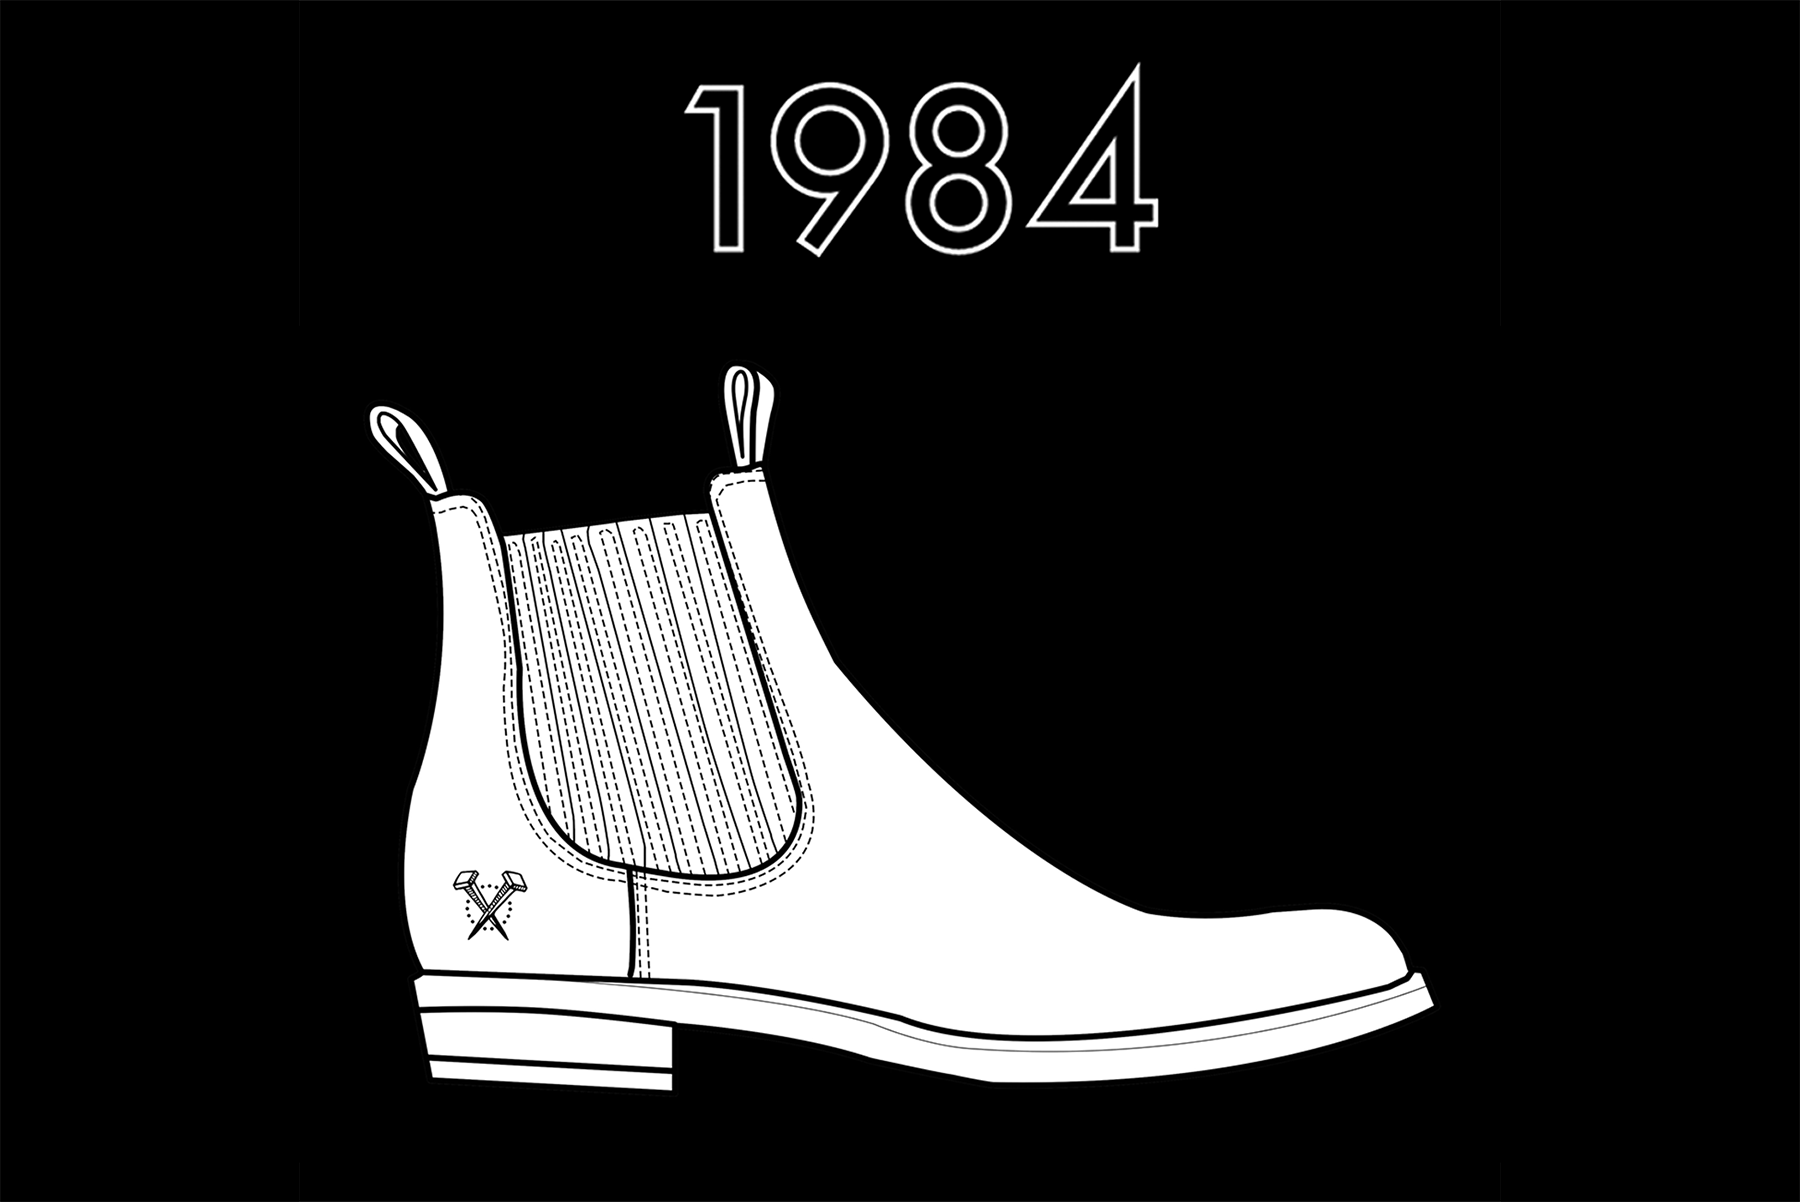 1984 Chelsea Boot - November 30, 2016 Release